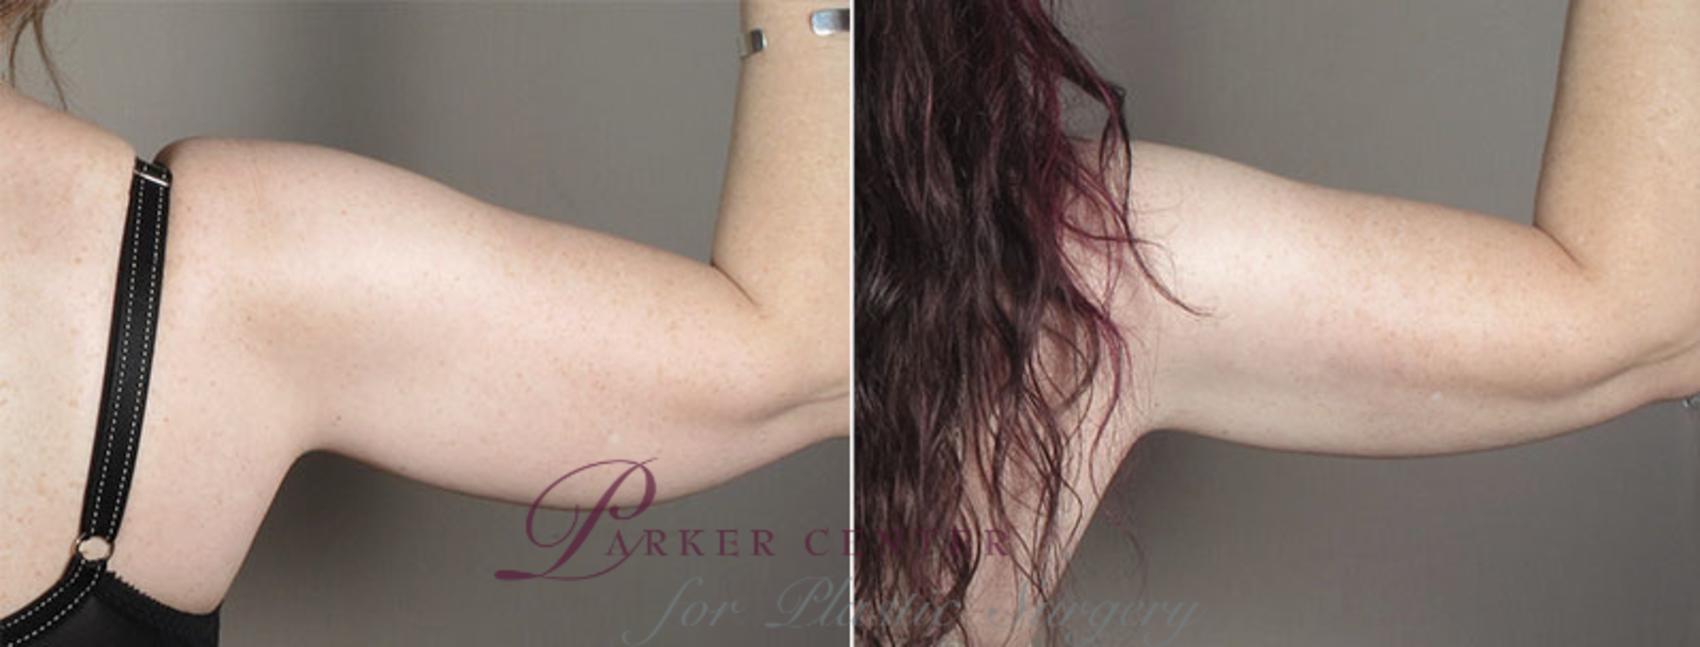 Upper Arm Rejuvenation Case 831 Before & After View #4 | Paramus, NJ | Parker Center for Plastic Surgery